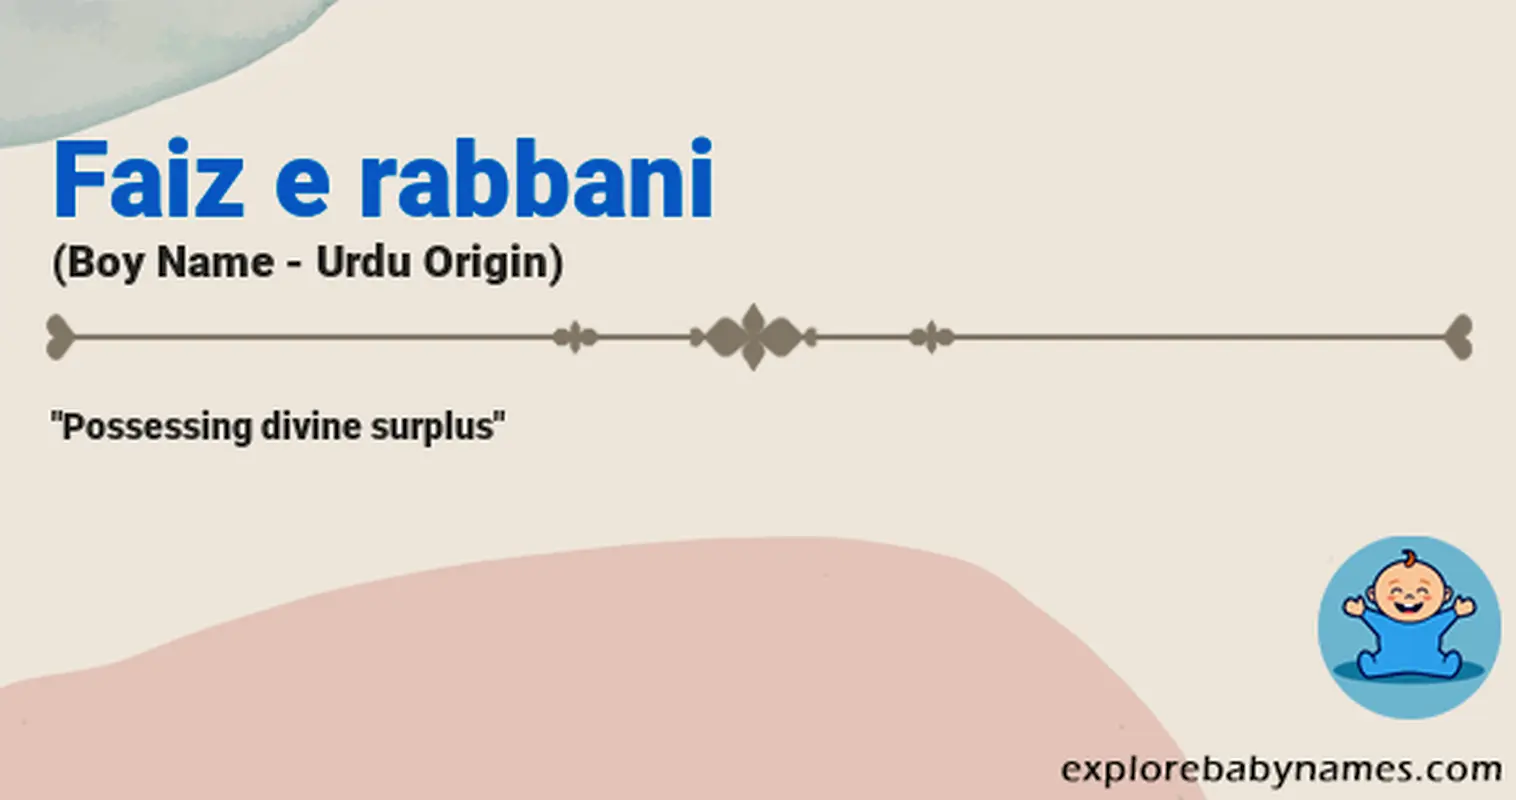 Meaning of Faiz e rabbani